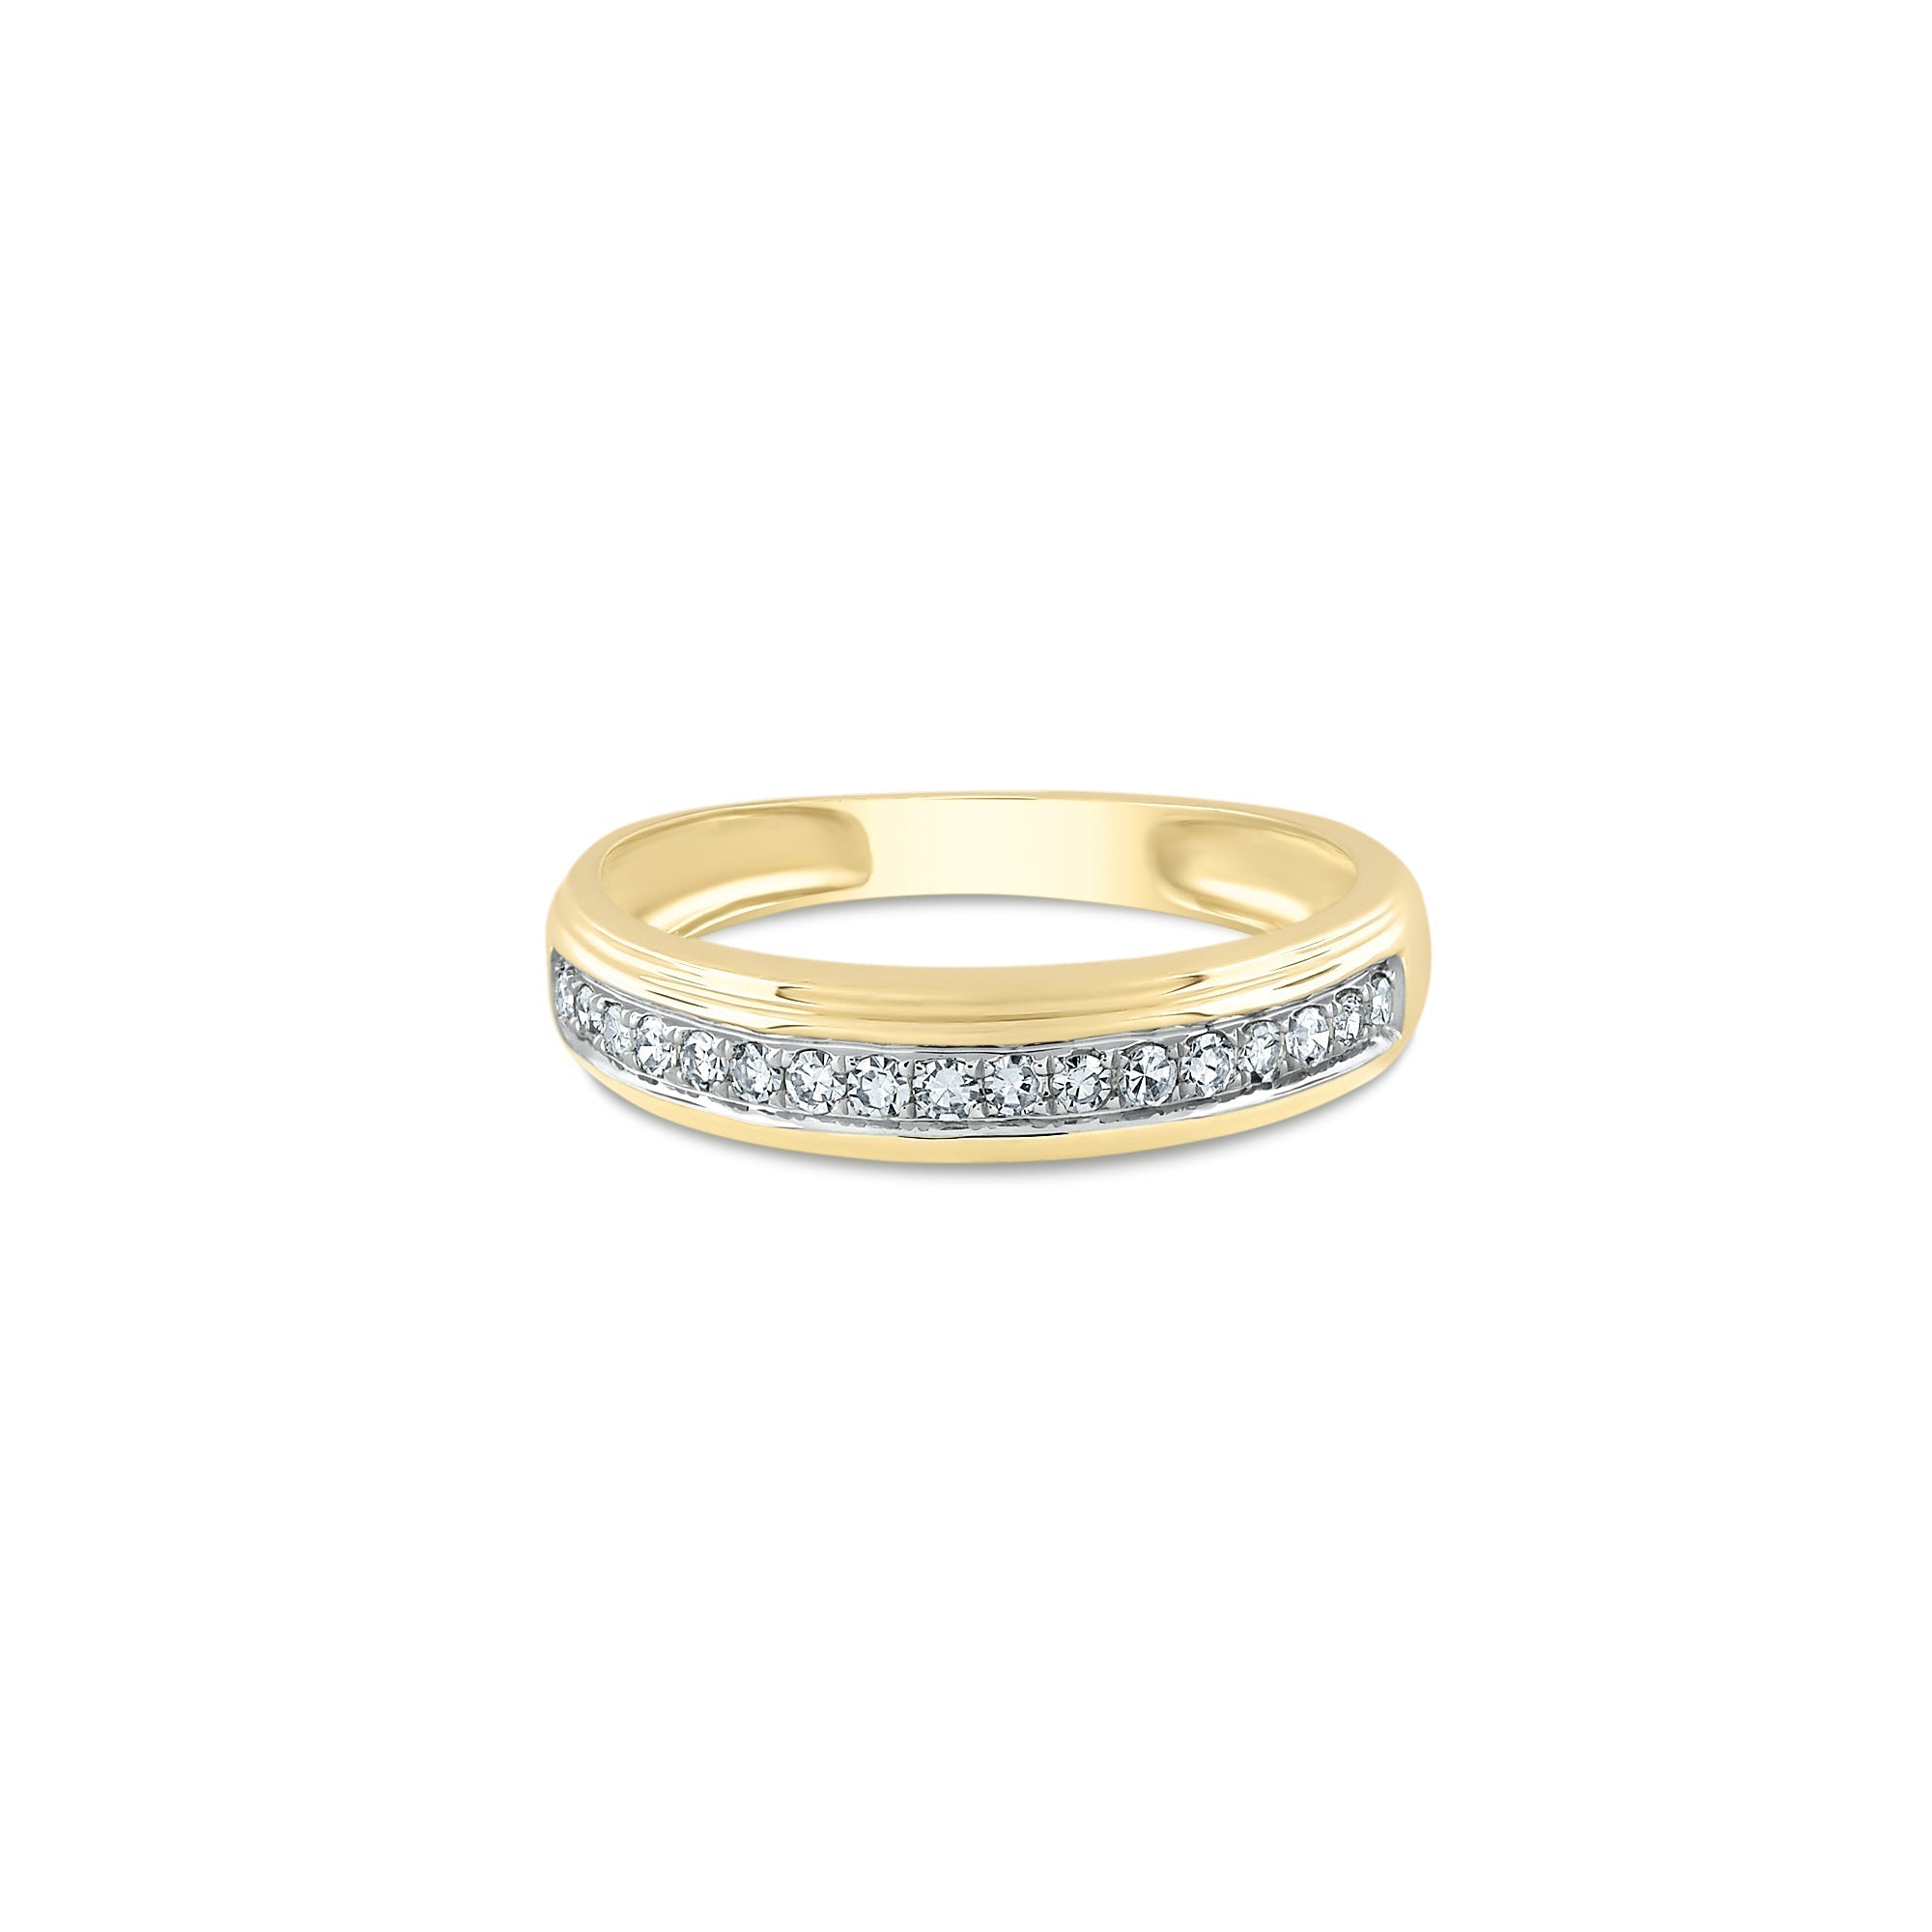 Textured wedding band, unisex ring | Eden Garden Jewelry™